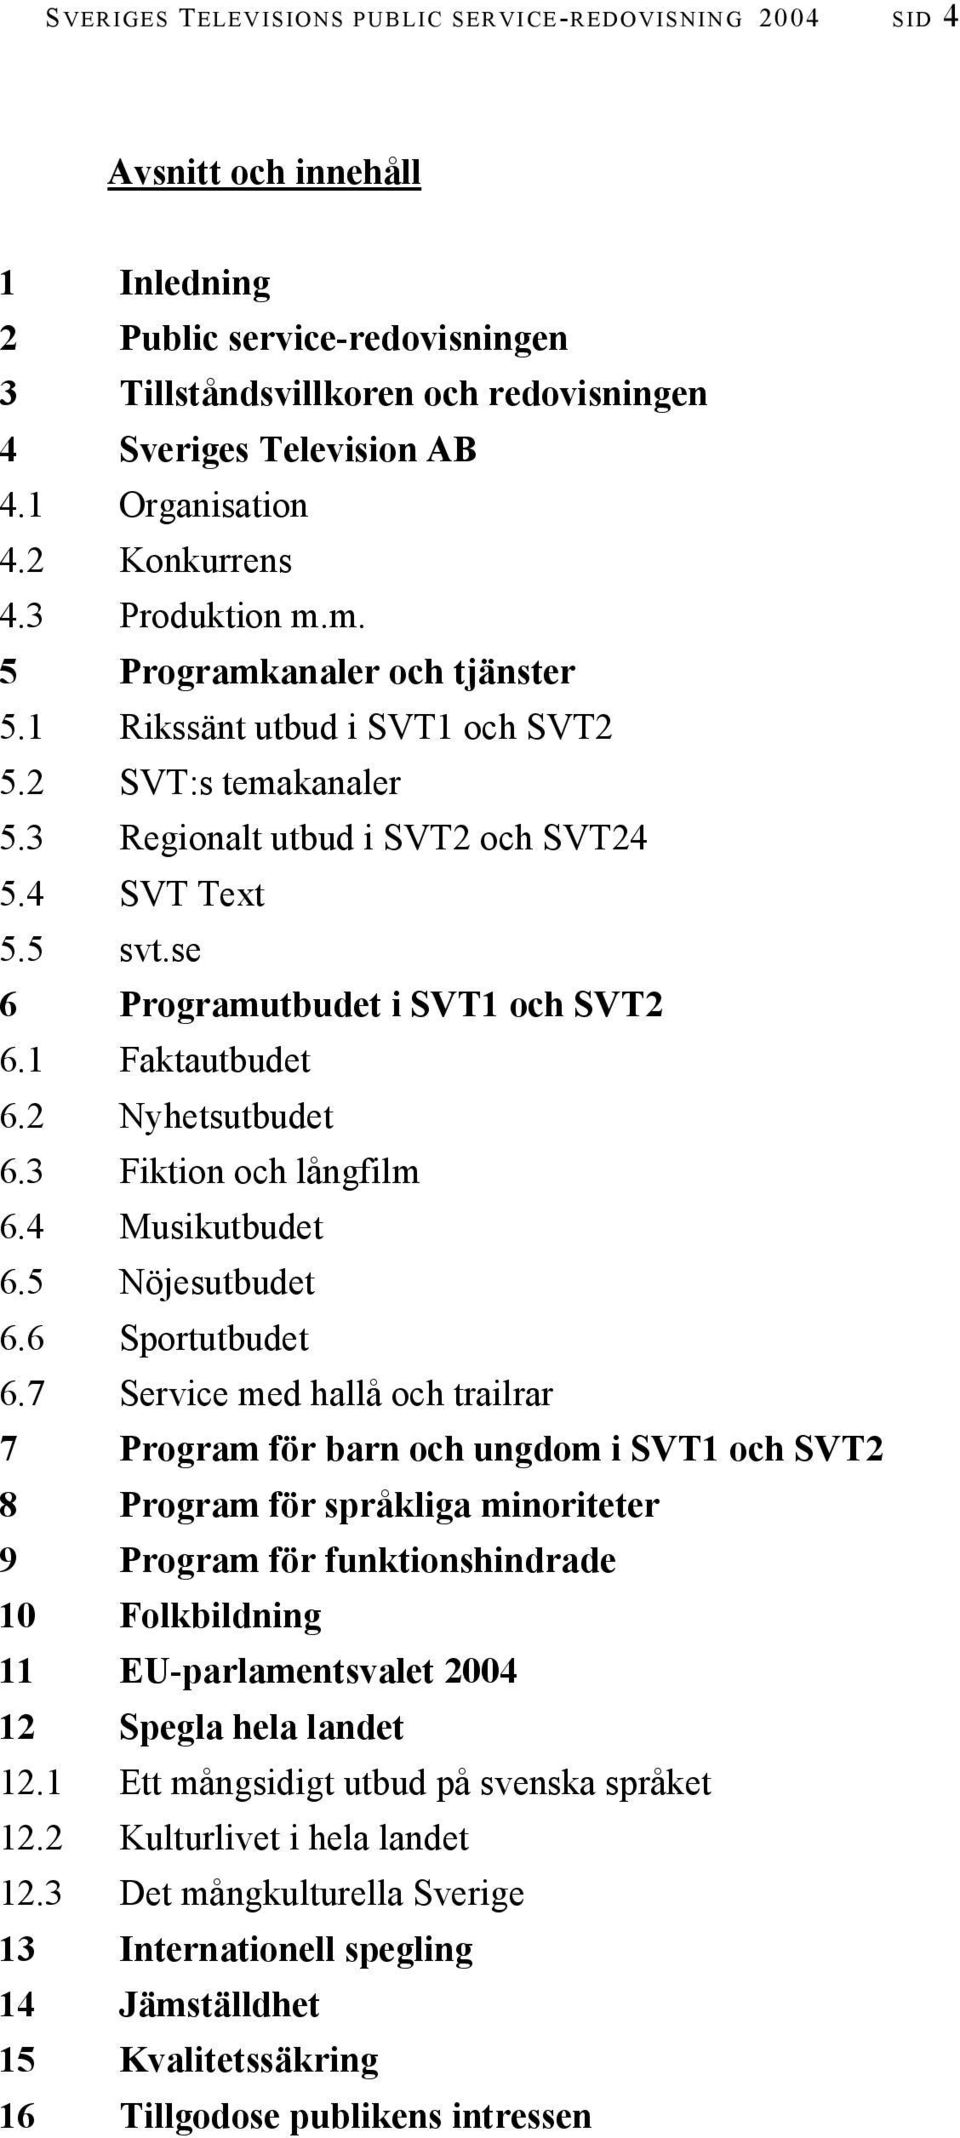 4 SVT Text 5.5 svt.se 6 Programutbudet i SVT1 och SVT2 6.1 Faktautbudet 6.2 Nyhetsutbudet 6.3 Fiktion och långfilm 6.4 Musikutbudet 6.5 Nöjesutbudet 6.6 Sportutbudet 6.